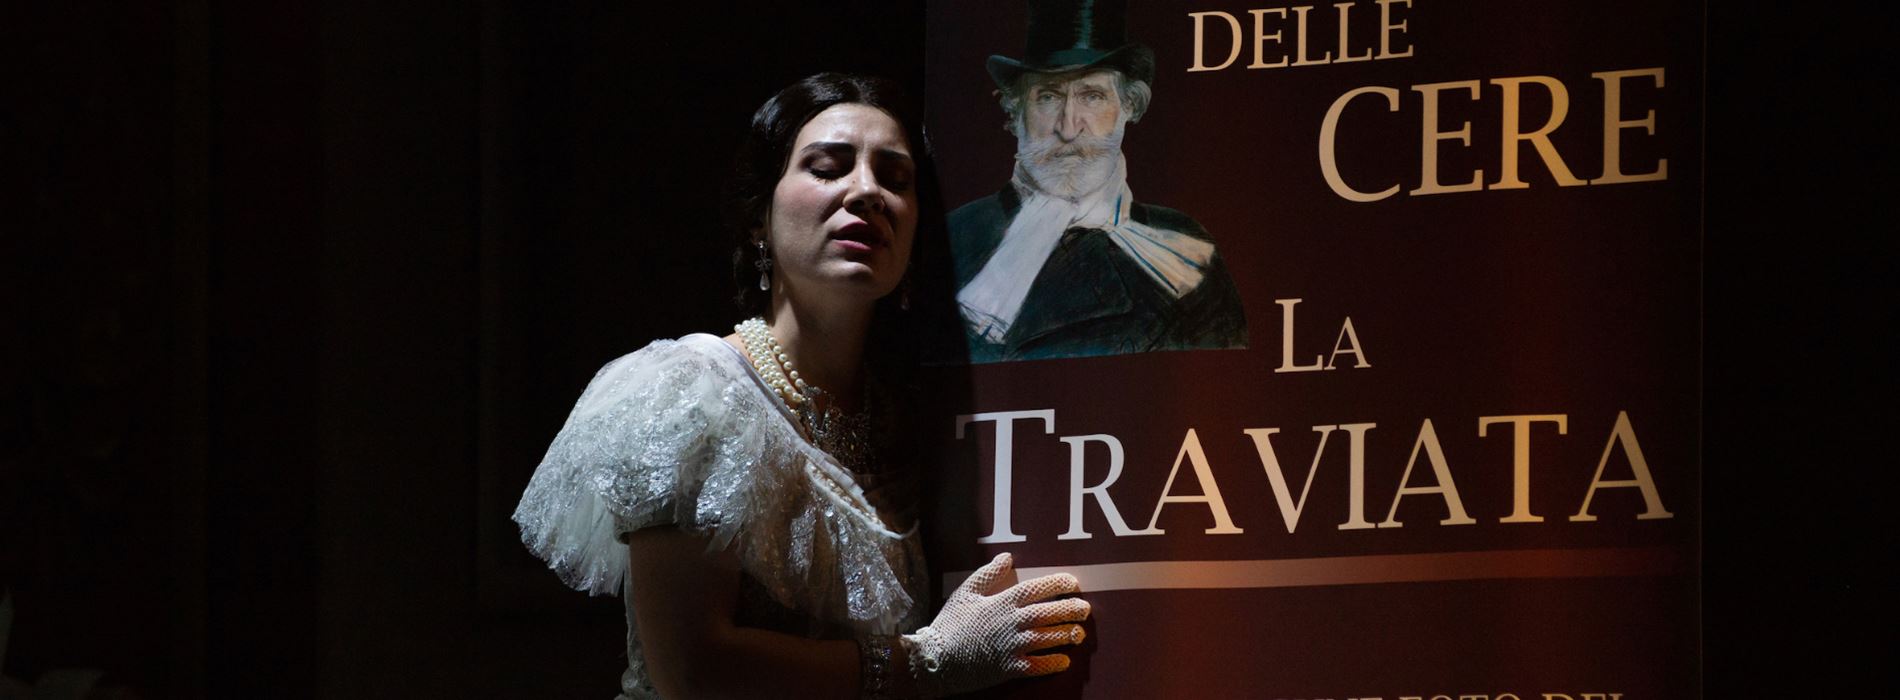 La traviata, successo da sold out